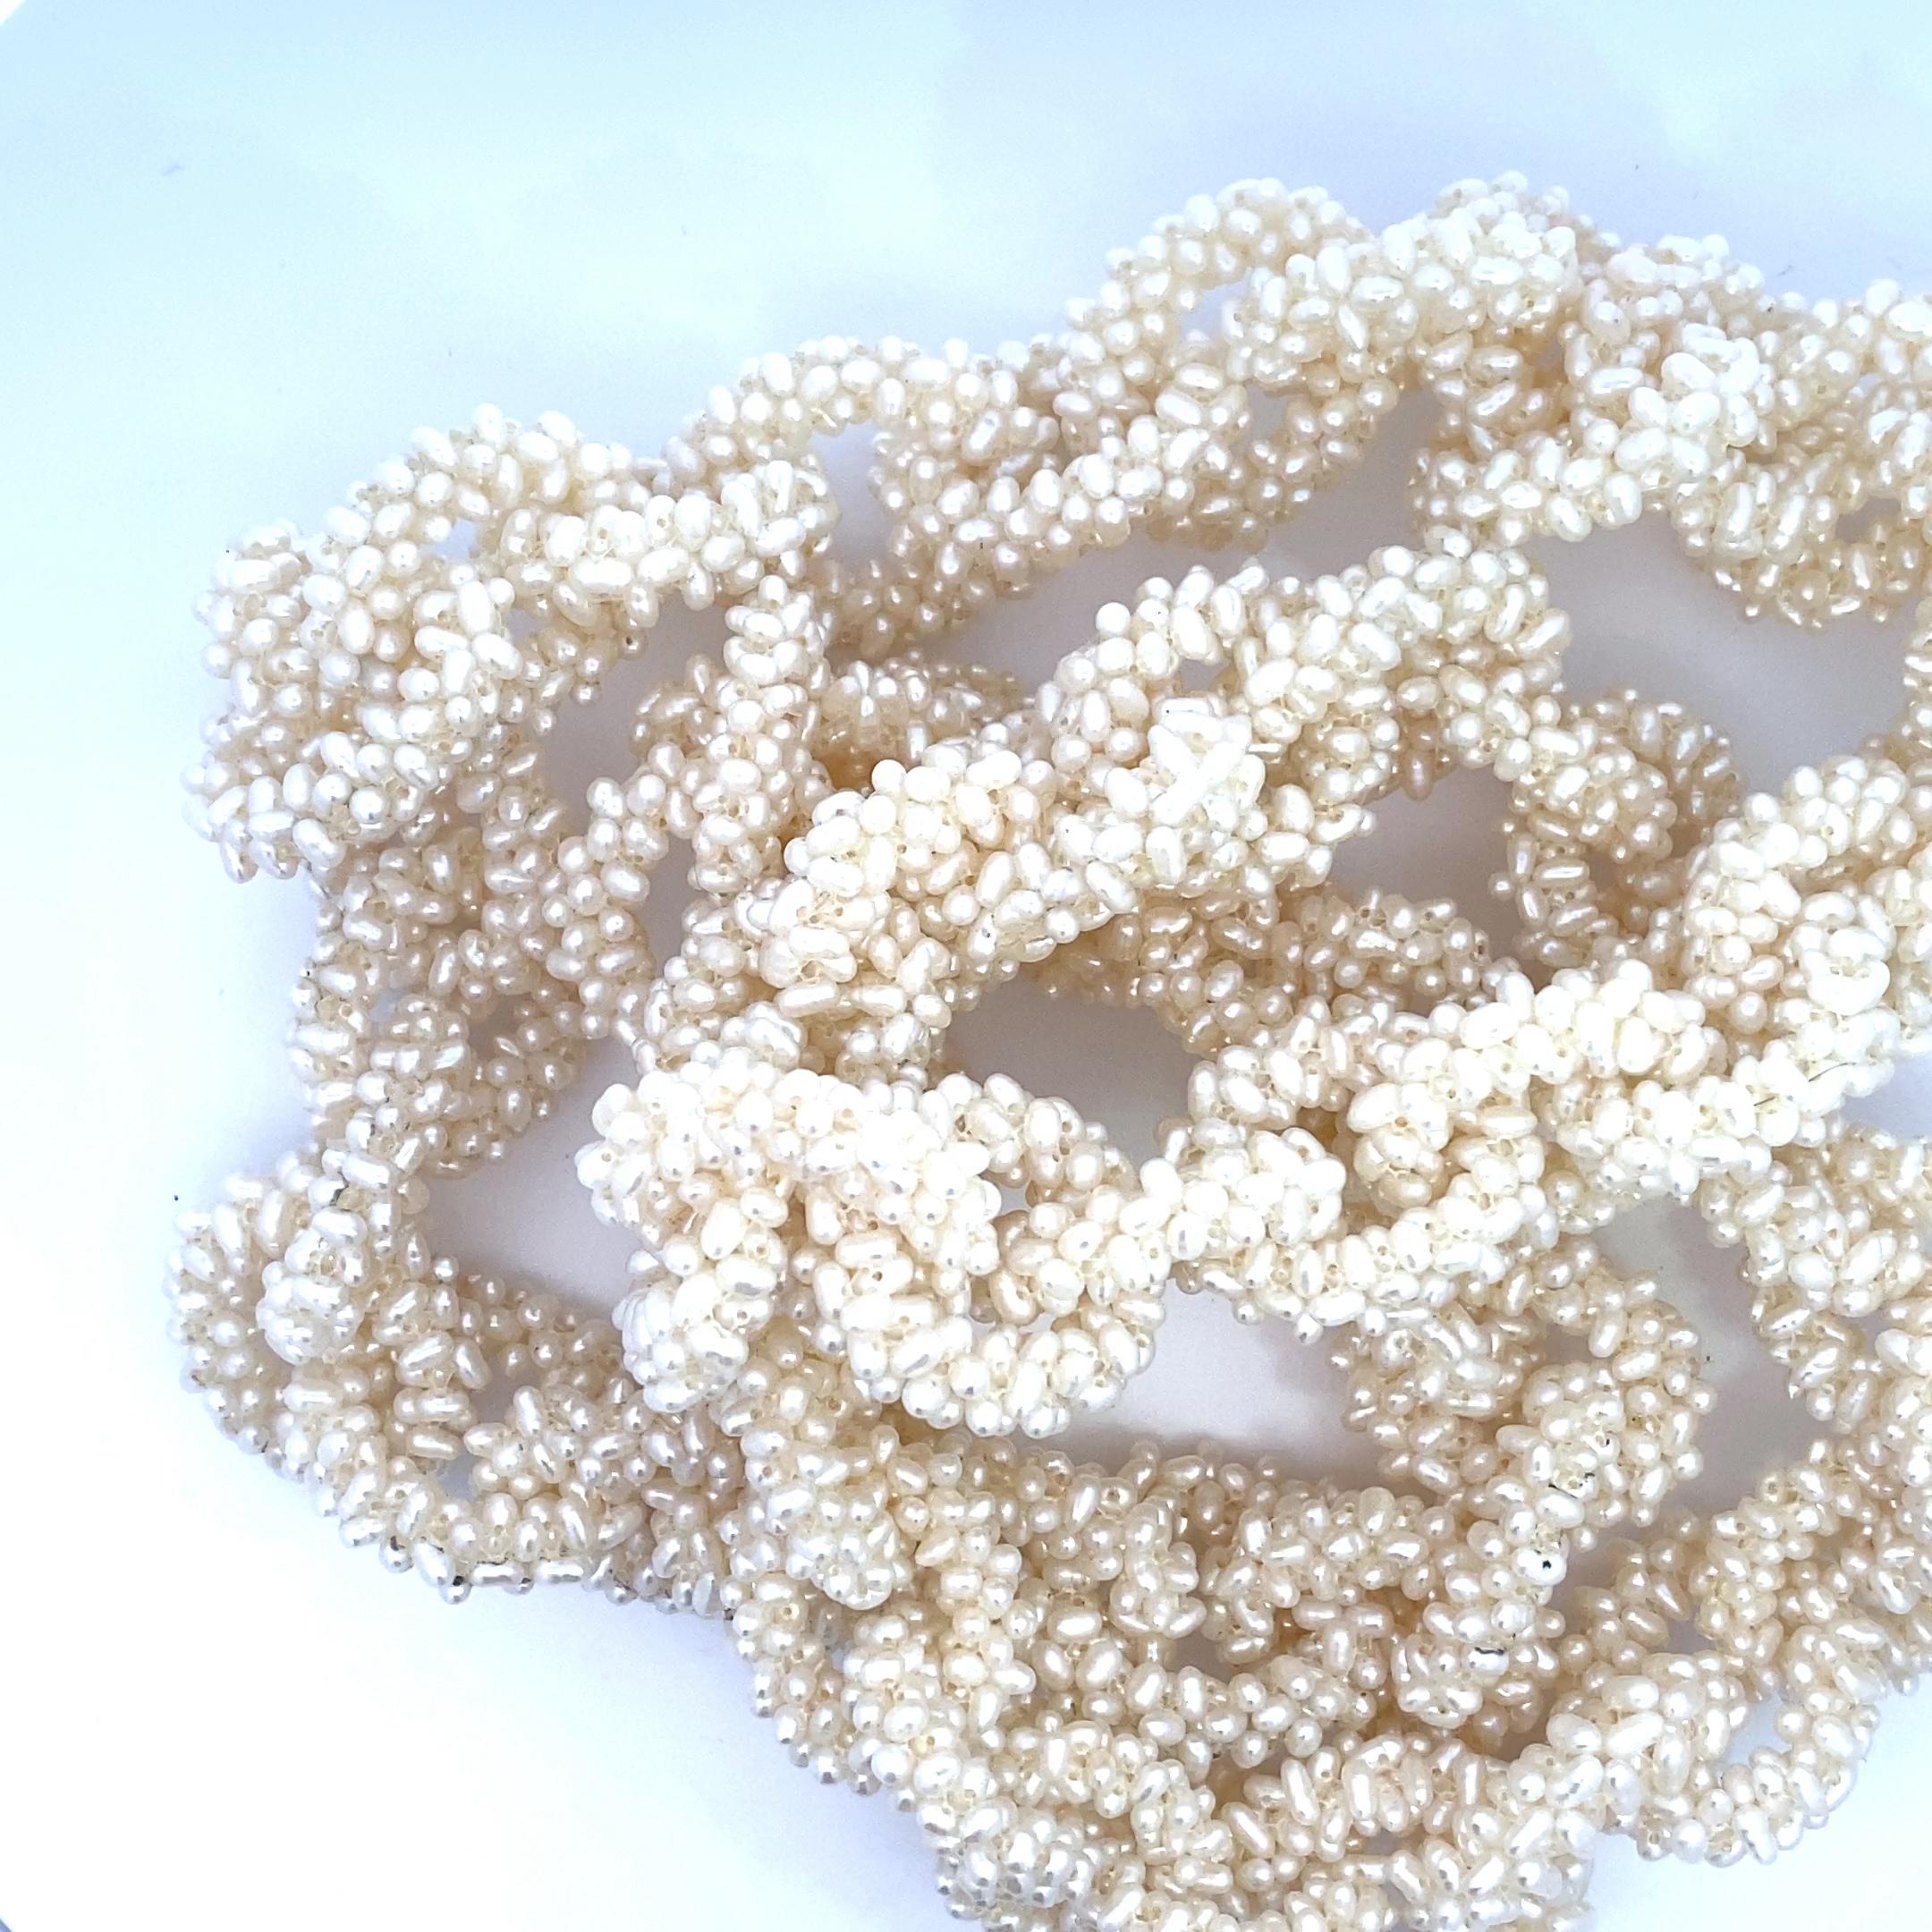 Dies ist ein unglaubliches Einzelstück! Diese dreißig vier Zoll Kette Glied Halskette verfügt über Glieder aus handgeflochtenen Samen Perlen. Diese einzigartigen Glieder enthalten schätzungsweise fast 10.000 Saatperlen, die in sorgfältiger